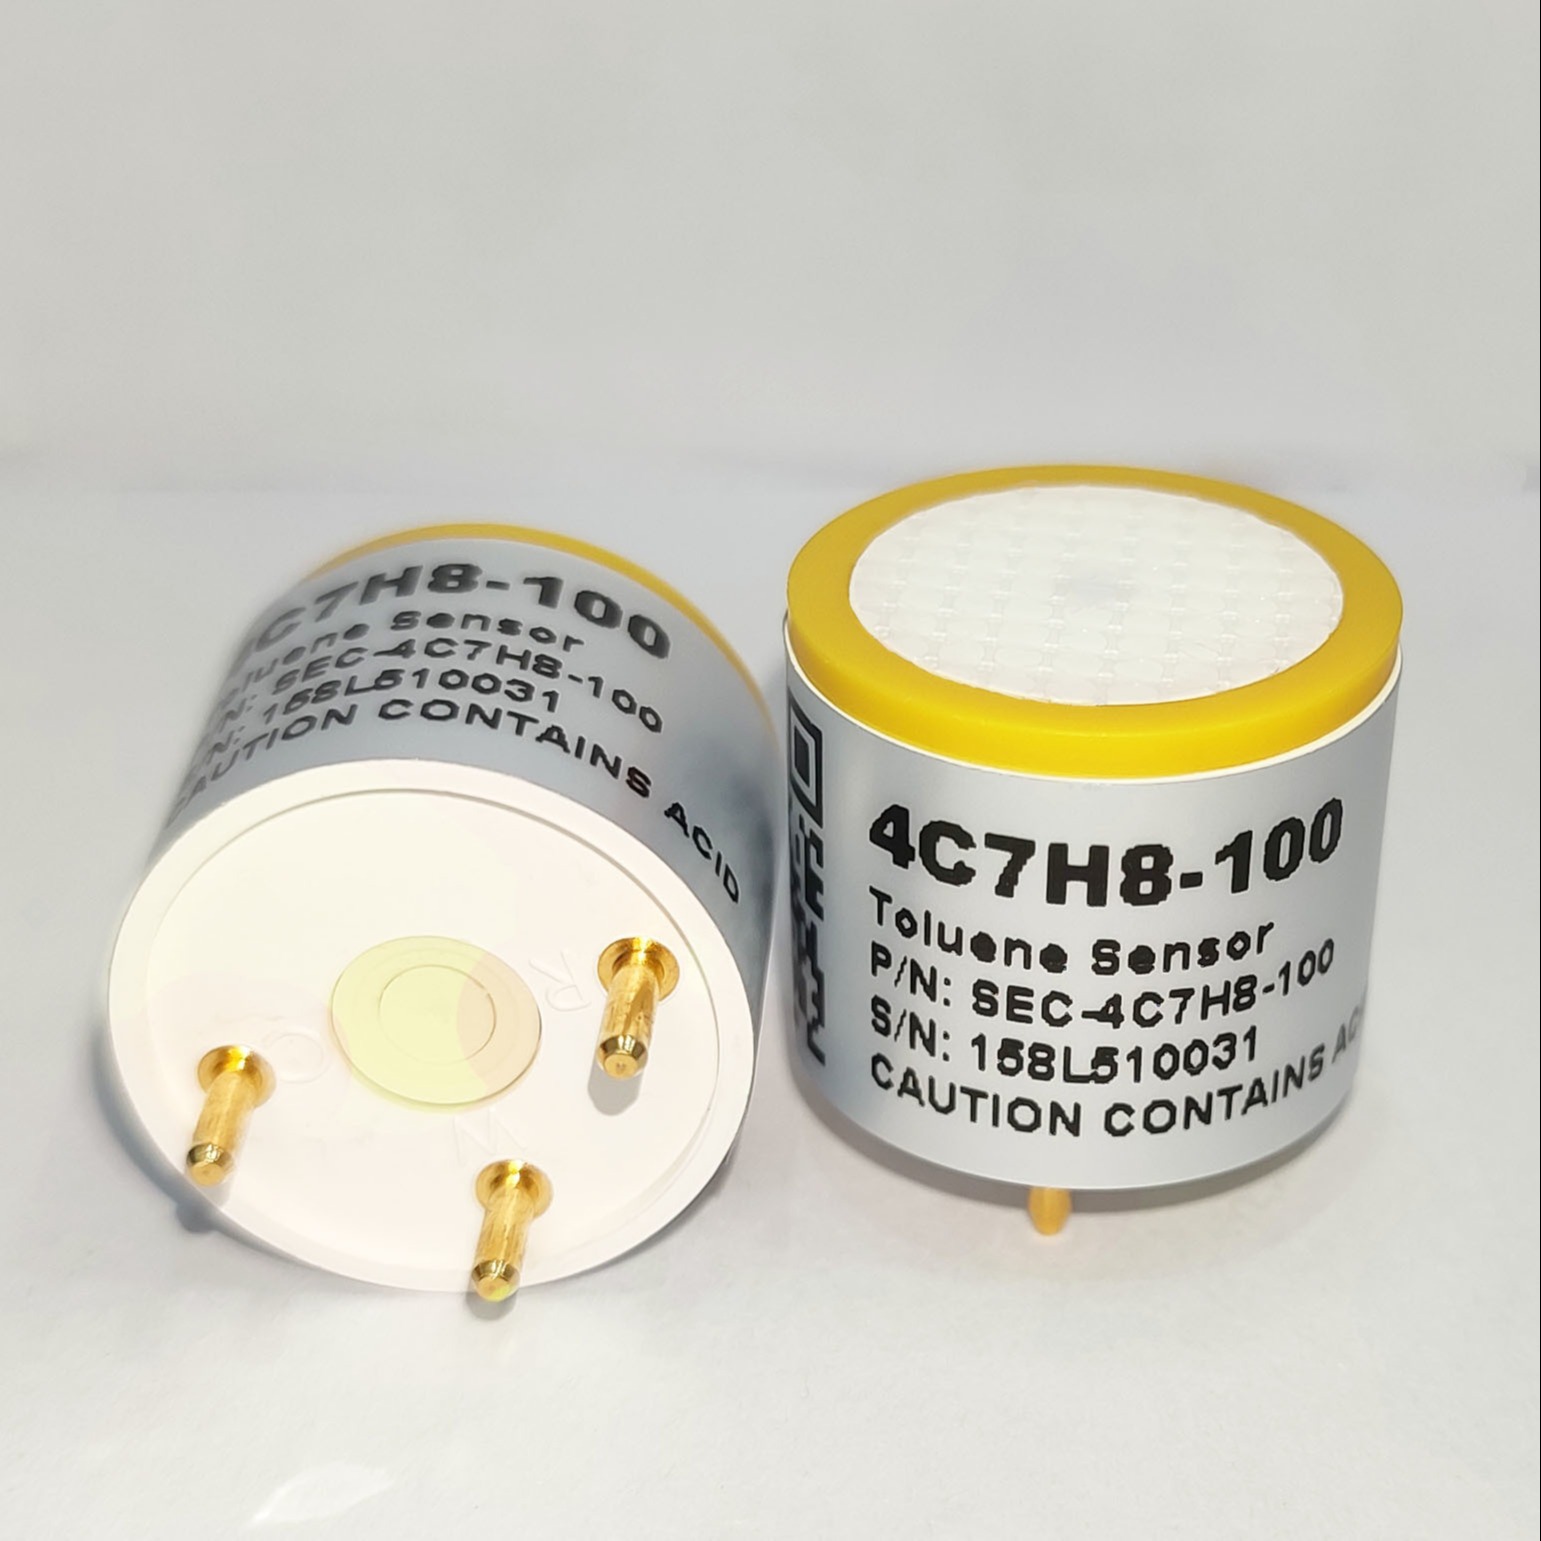 爱和瑞 电化学气体传感器 4C7H8-100 甲苯气体传感器 高灵敏度，响应快，寿命长